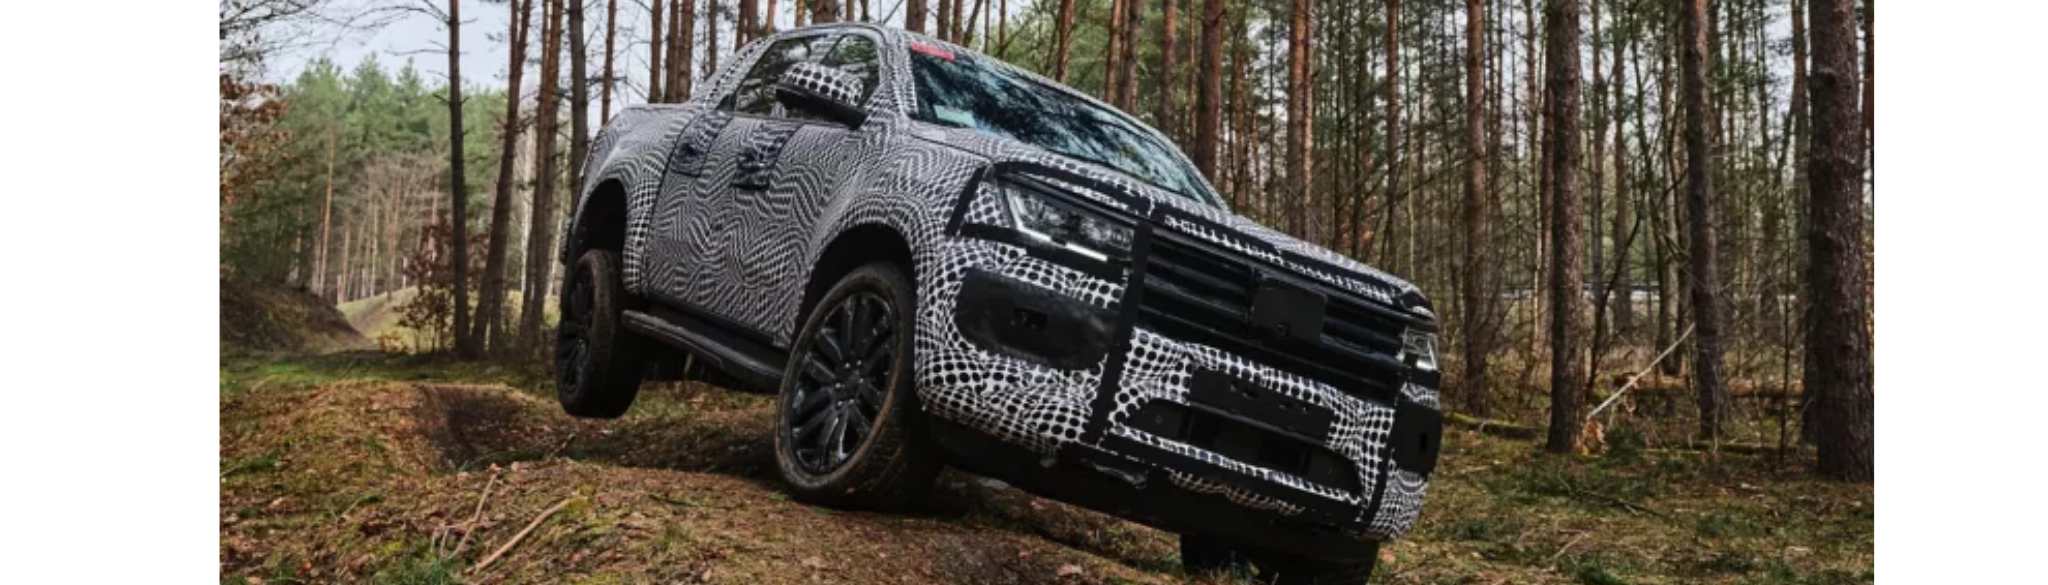 2022 Volkswagen Amarok Teaser Image in the woods